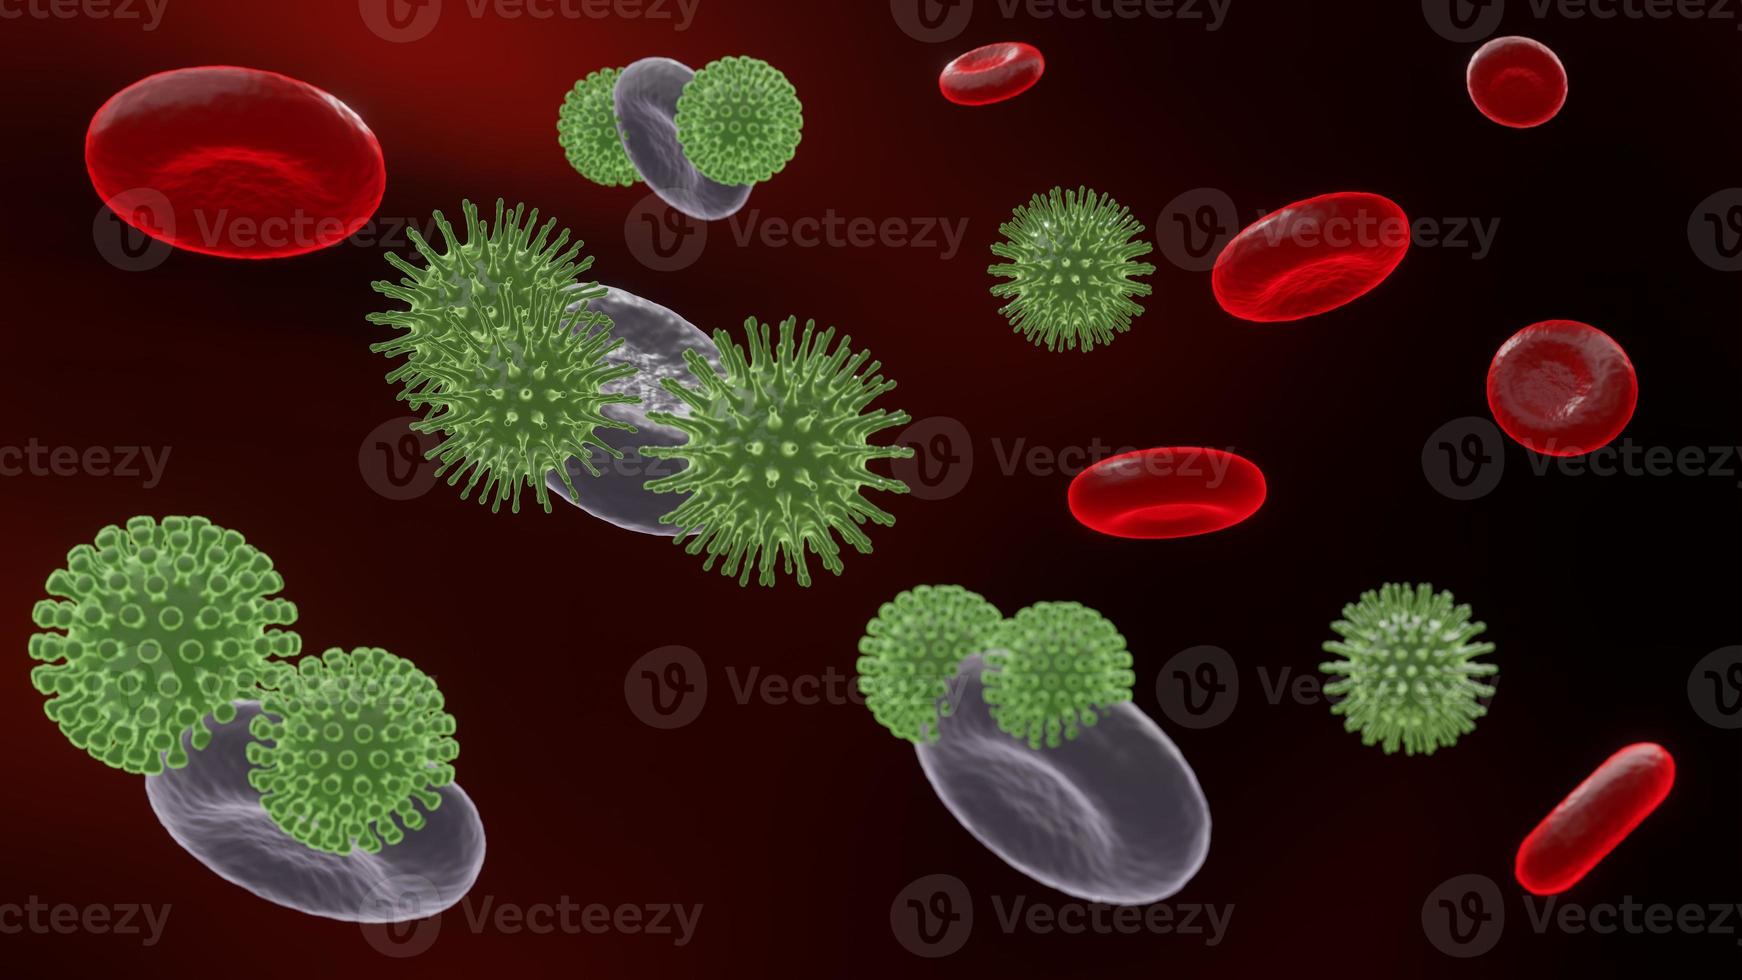 vírus patogênicos que causam infecção no organismo hospedeiro, surto de doença viral, para fundo ou recurso gráfico, renderização 3d foto